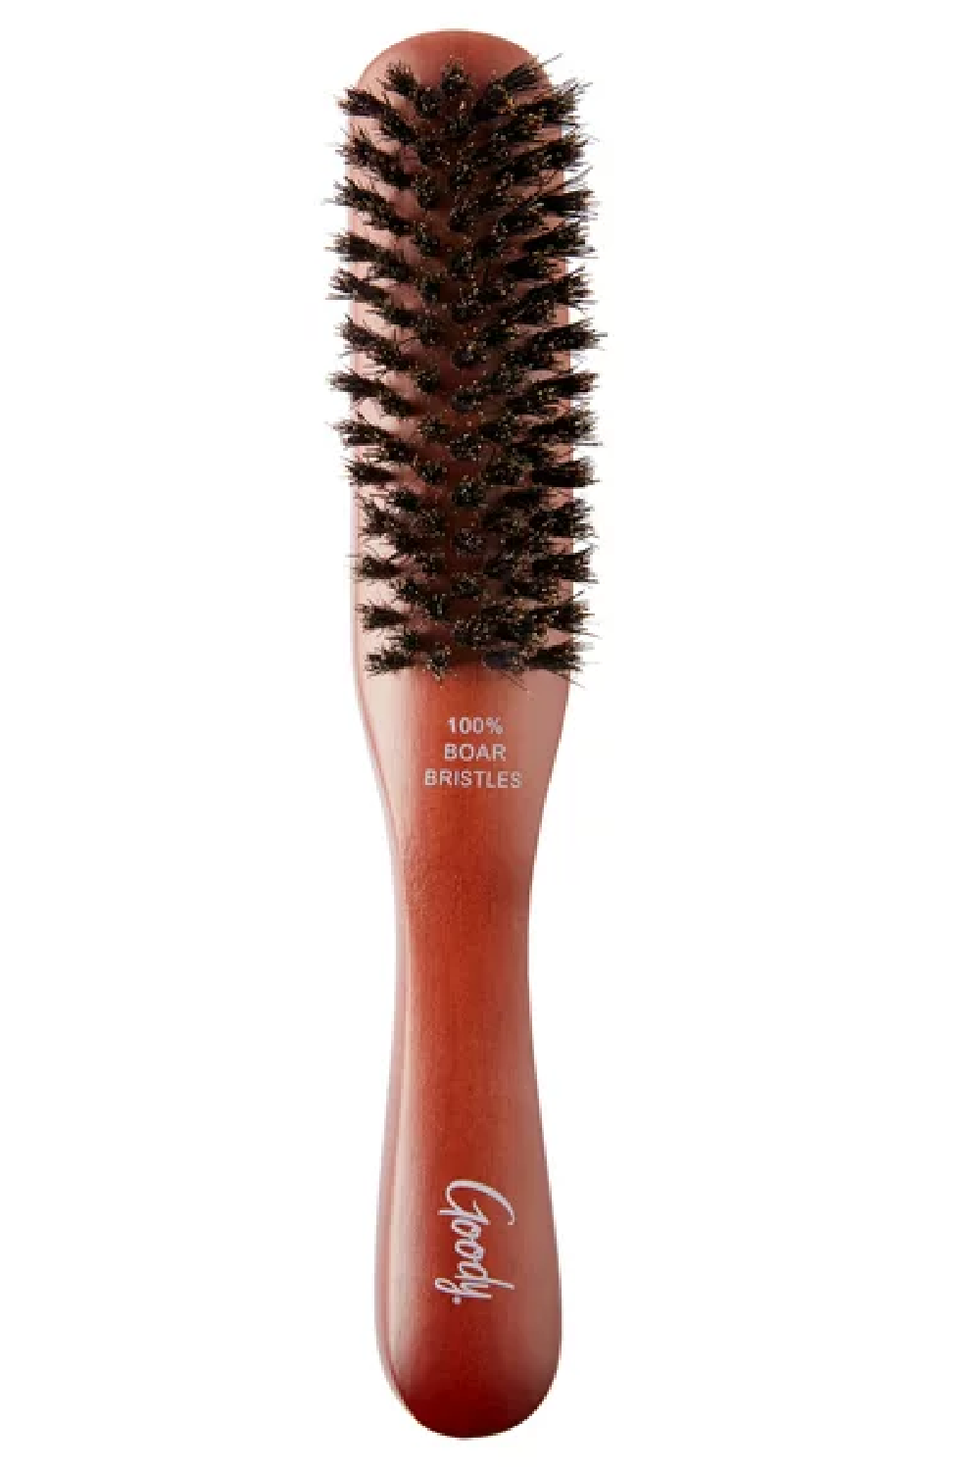 NVTED Hair Brush Set with Detangling Nylon Pins Massage Paddle Brush  Cushion Hair Combs Hair Dryer Brush for Women Men Kids Girls (GOLD)